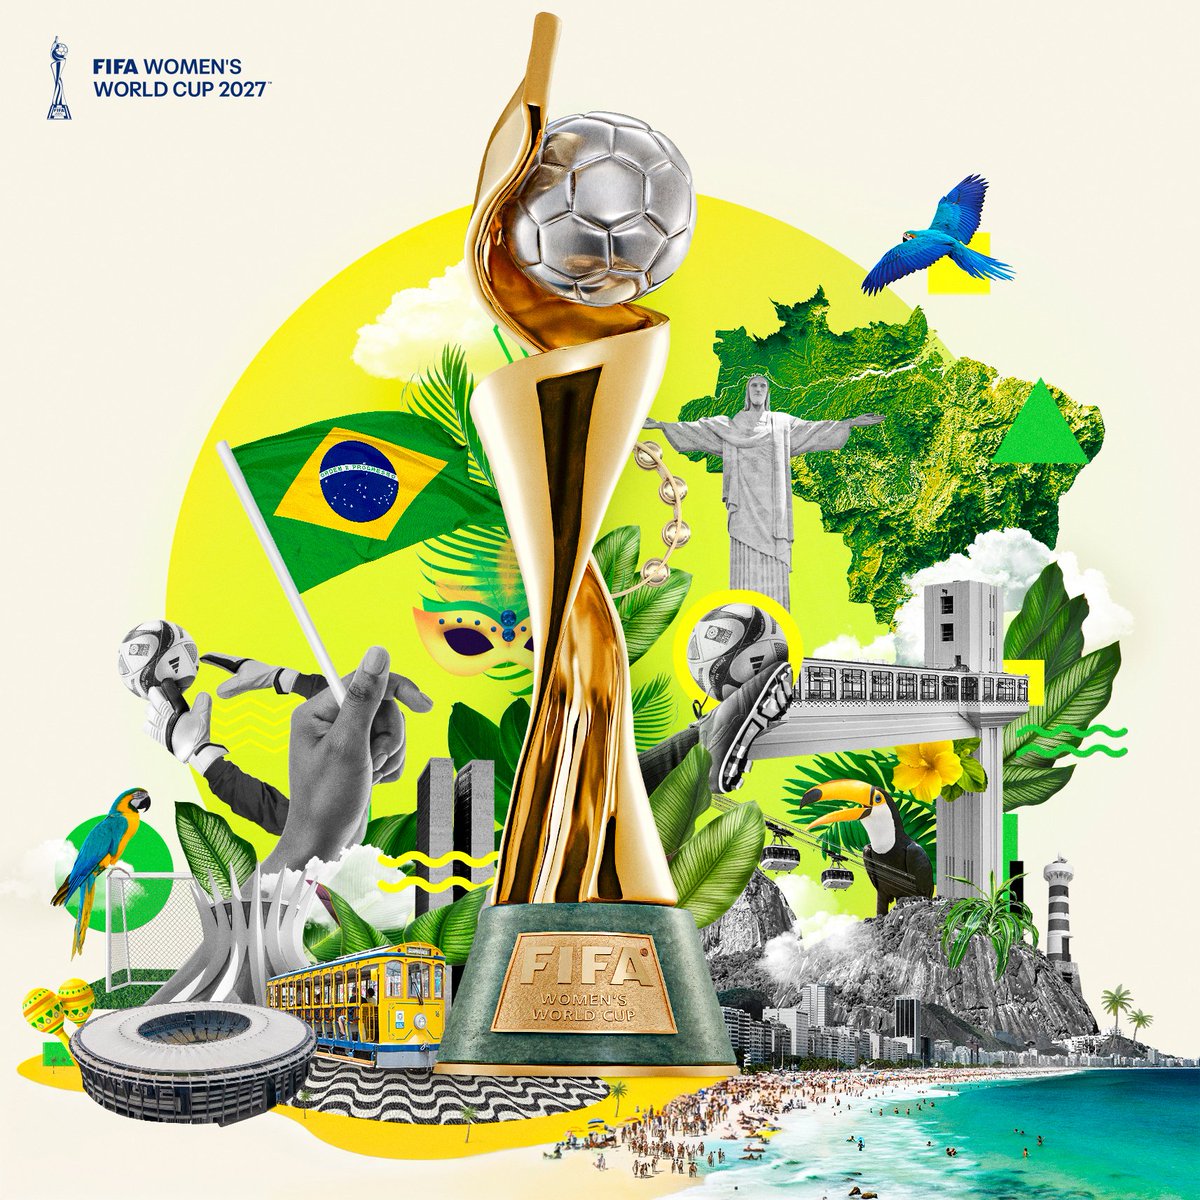 Sede lista 🙋🏽‍♀️ 🇧🇷 ⚽ 🌎🌏🌍 Brasil recibirá el Mundial Femenil de 2027, primera vez que ese torneo llega a Latinoamérica. 13 años después del Mundial varonil, la Verdeamarelha volverá a ser anfitriona de un Mundial.